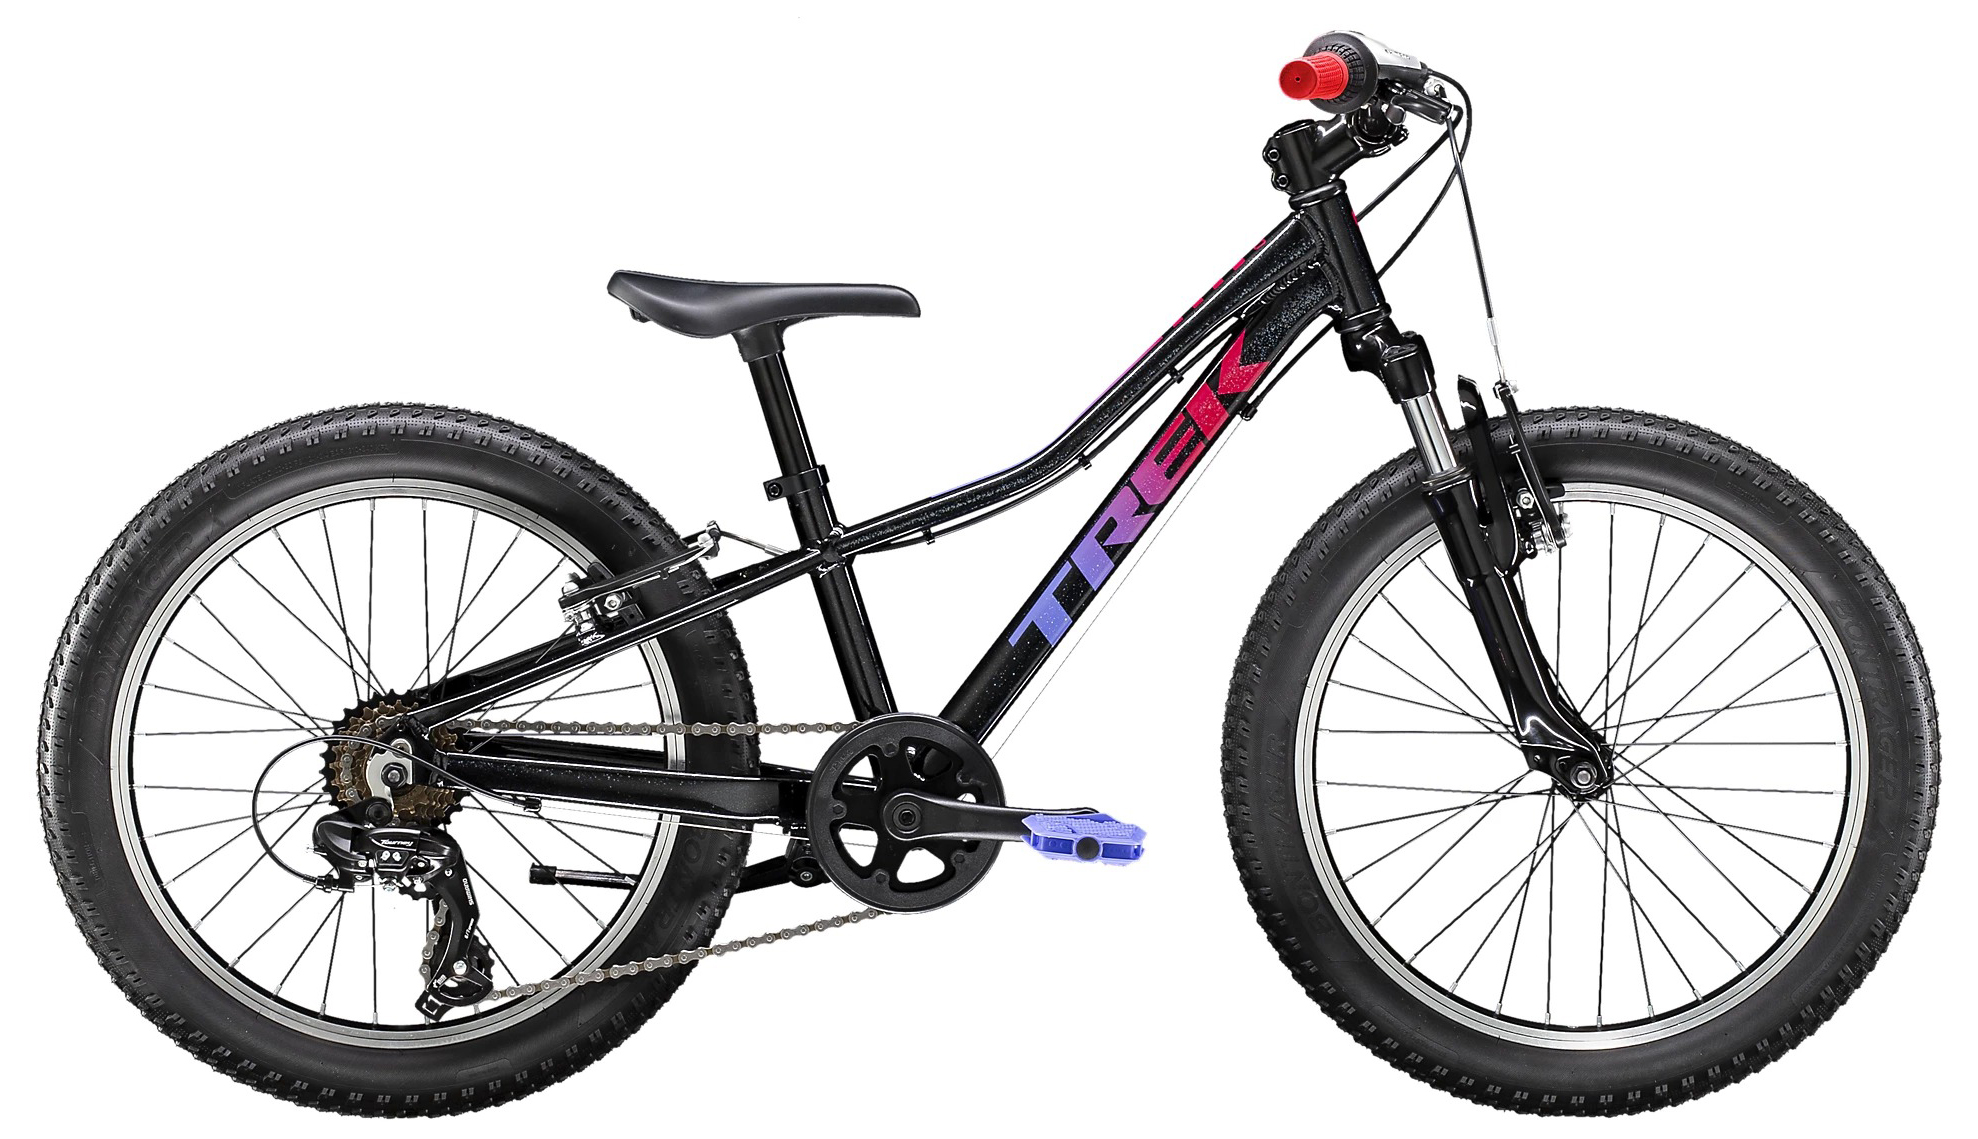  Отзывы о Детском велосипеде Trek Precaliber 20 7Sp Girls 2020